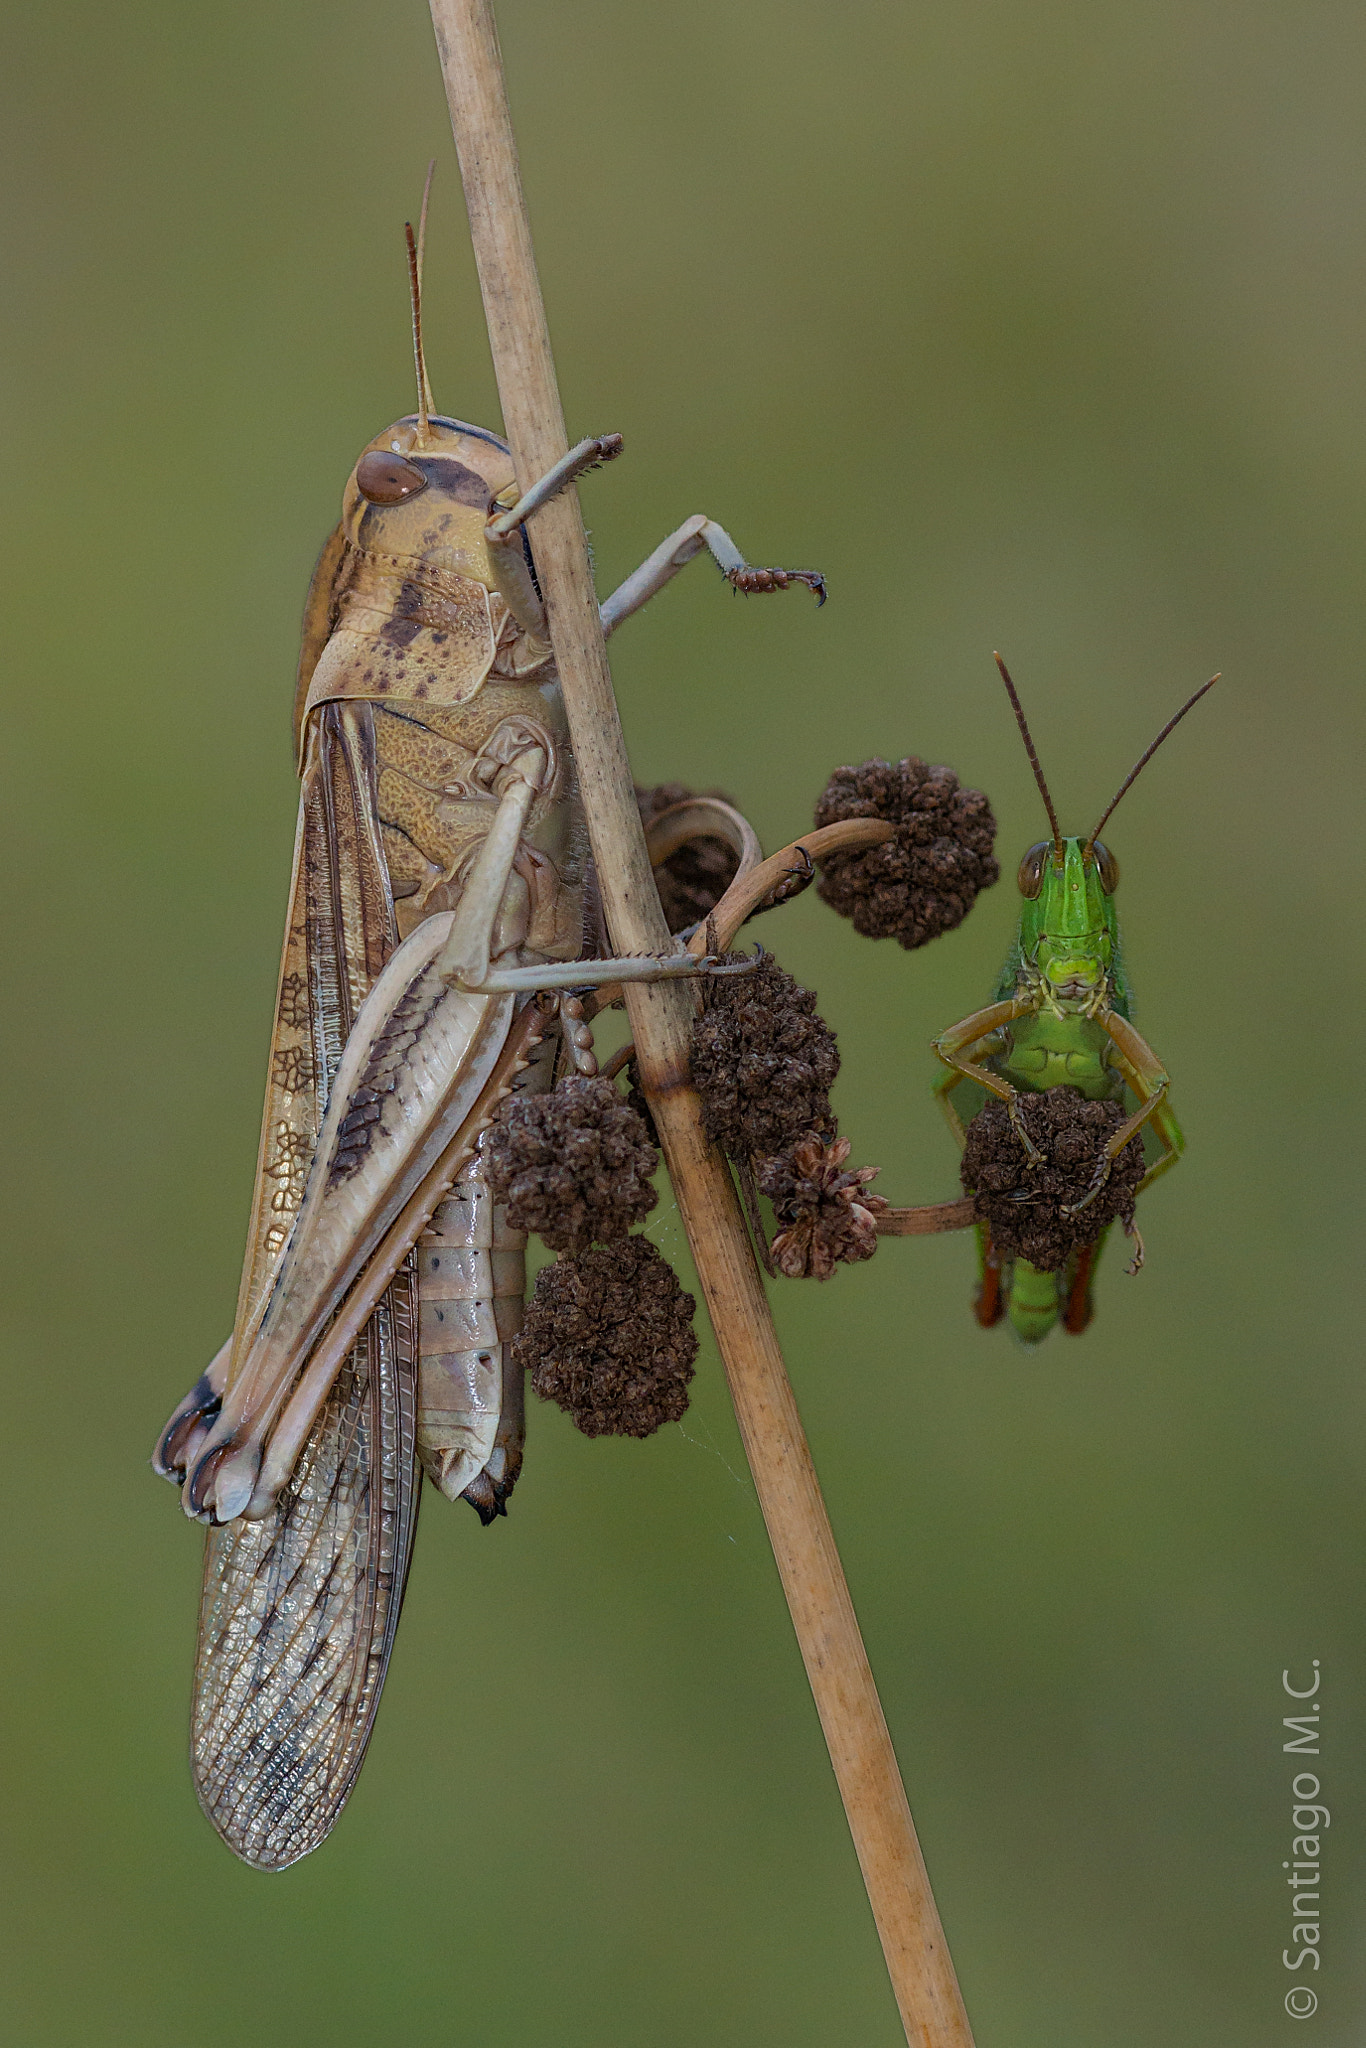 Sony SLT-A77 sample photo. Locusta migratoria y paracinema tricolor photography